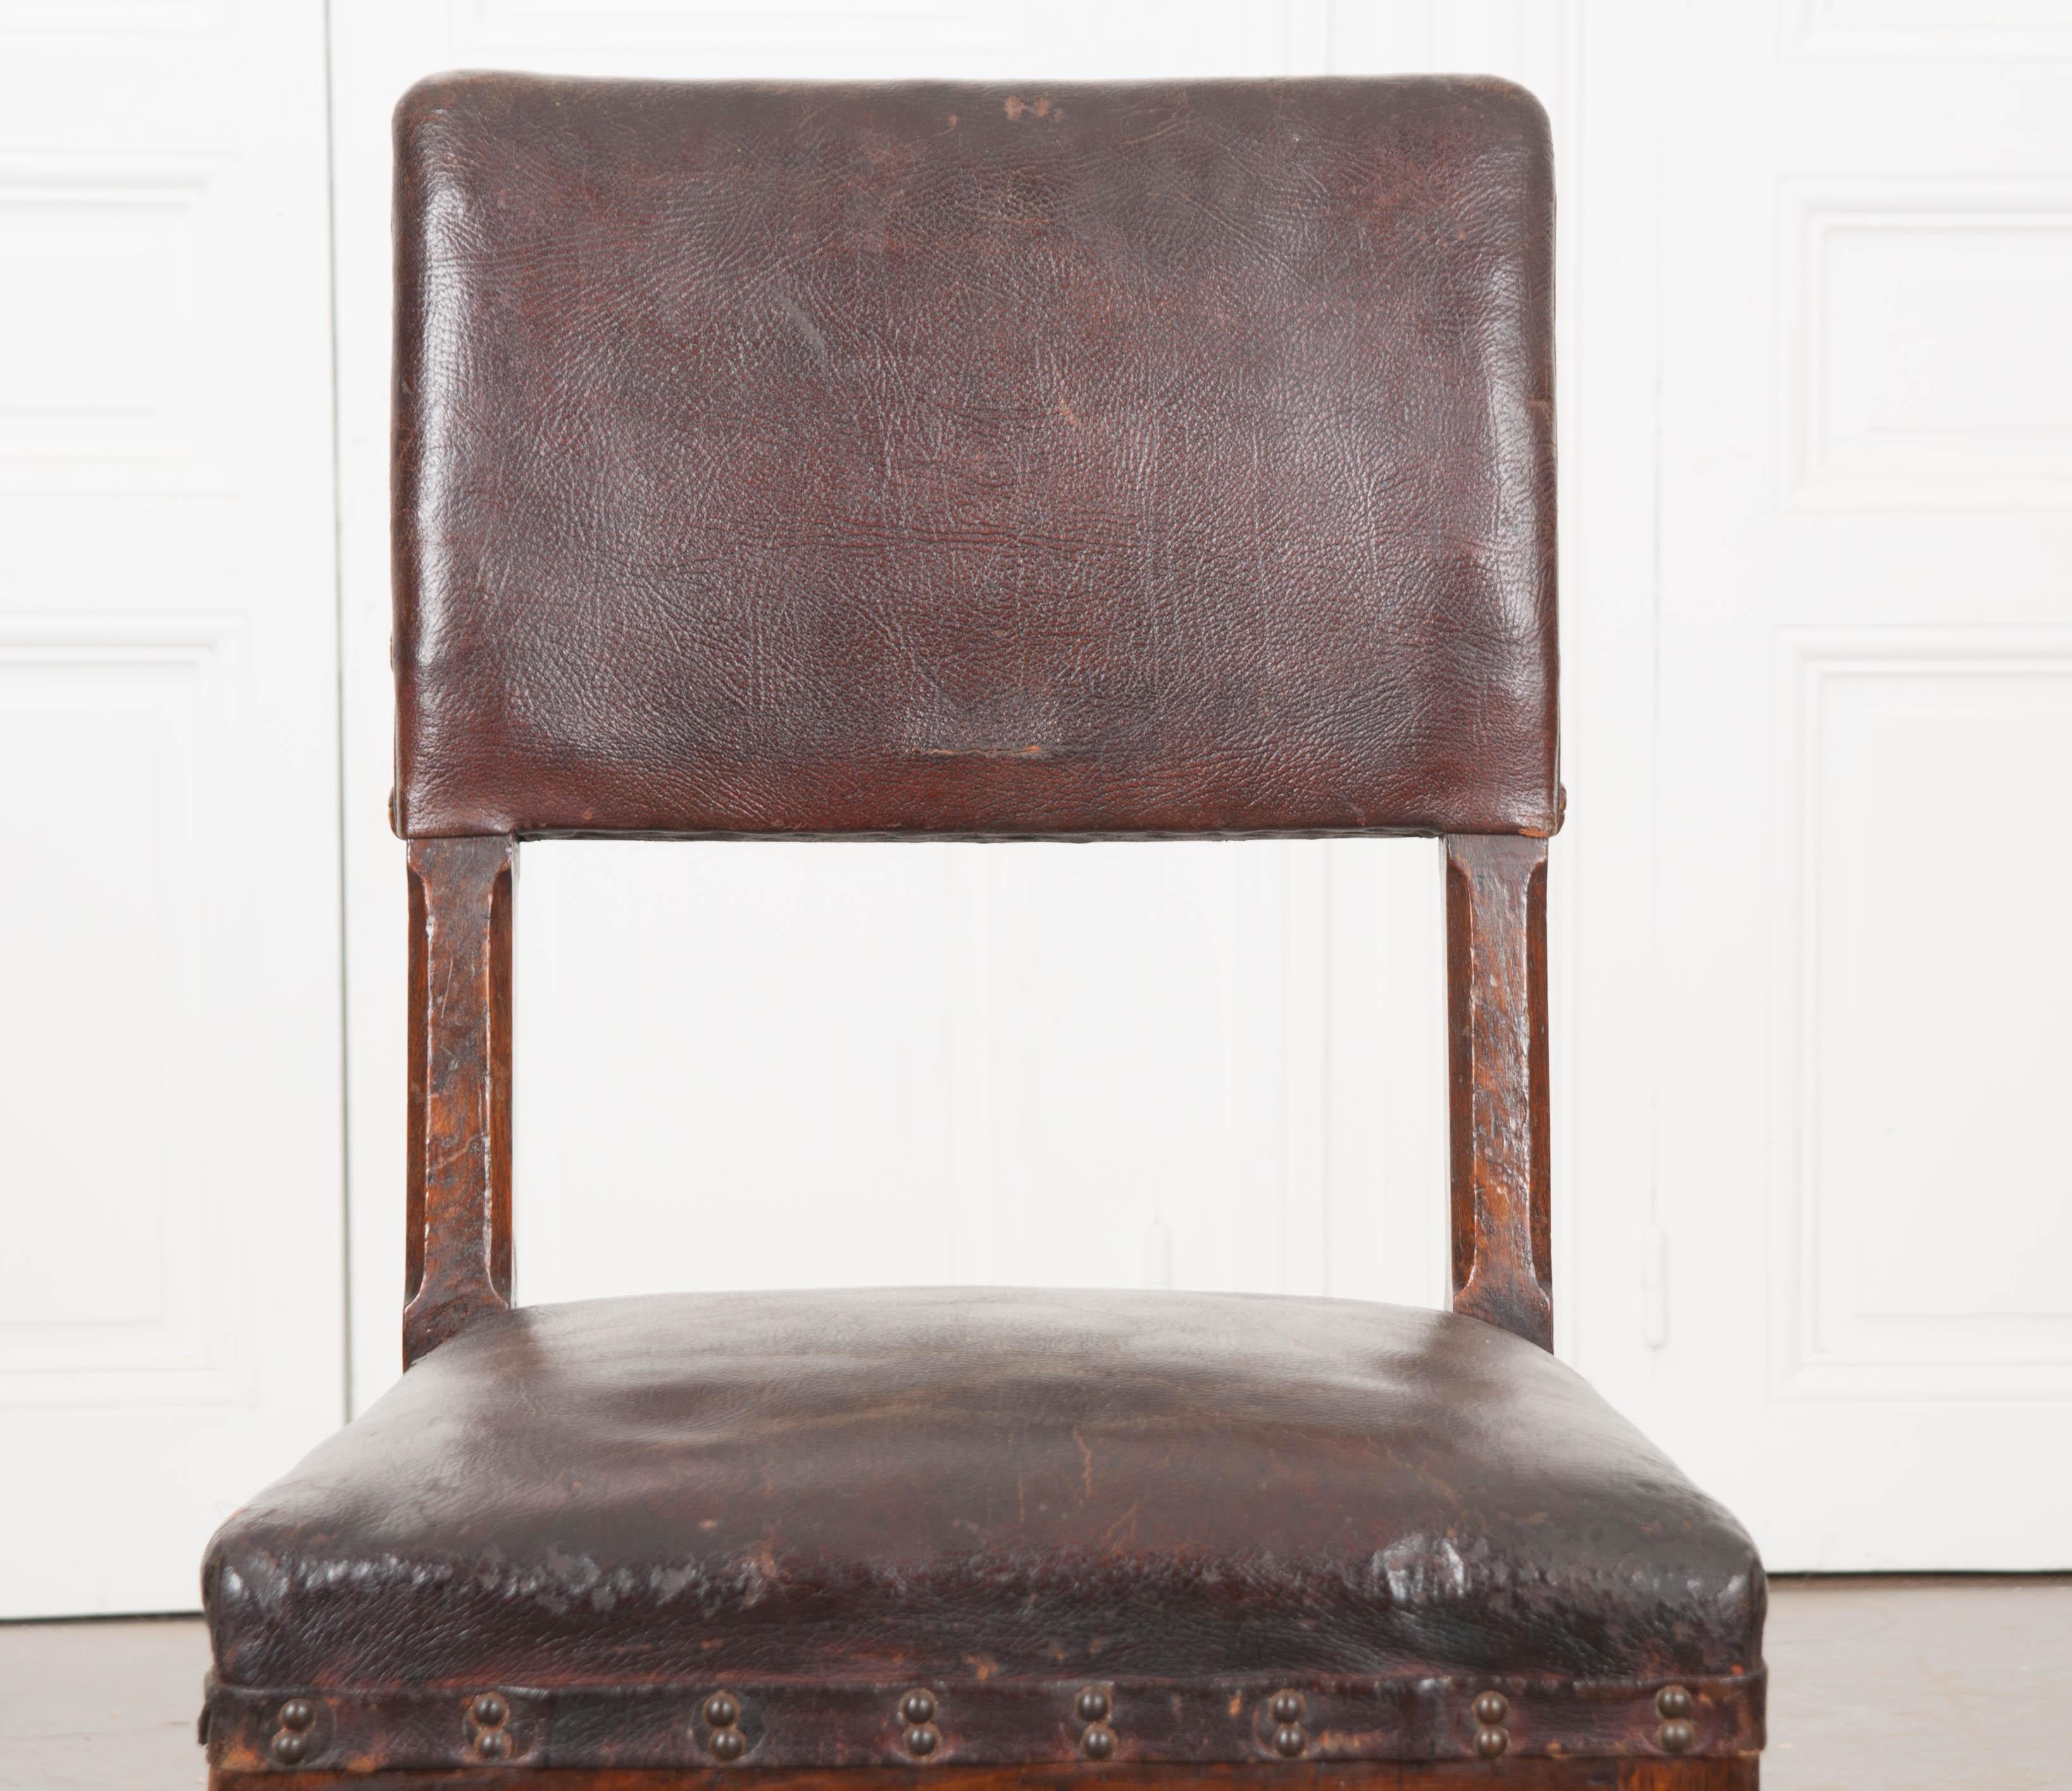 Cette magnifique chaise de bureau en chêne anglais du XIXe siècle, vers les années 1860, présente un revêtement en cuir d'origine et une patine d'une richesse incroyable. Le dossier de la chaise, rembourré et orné de grandes têtes de clous